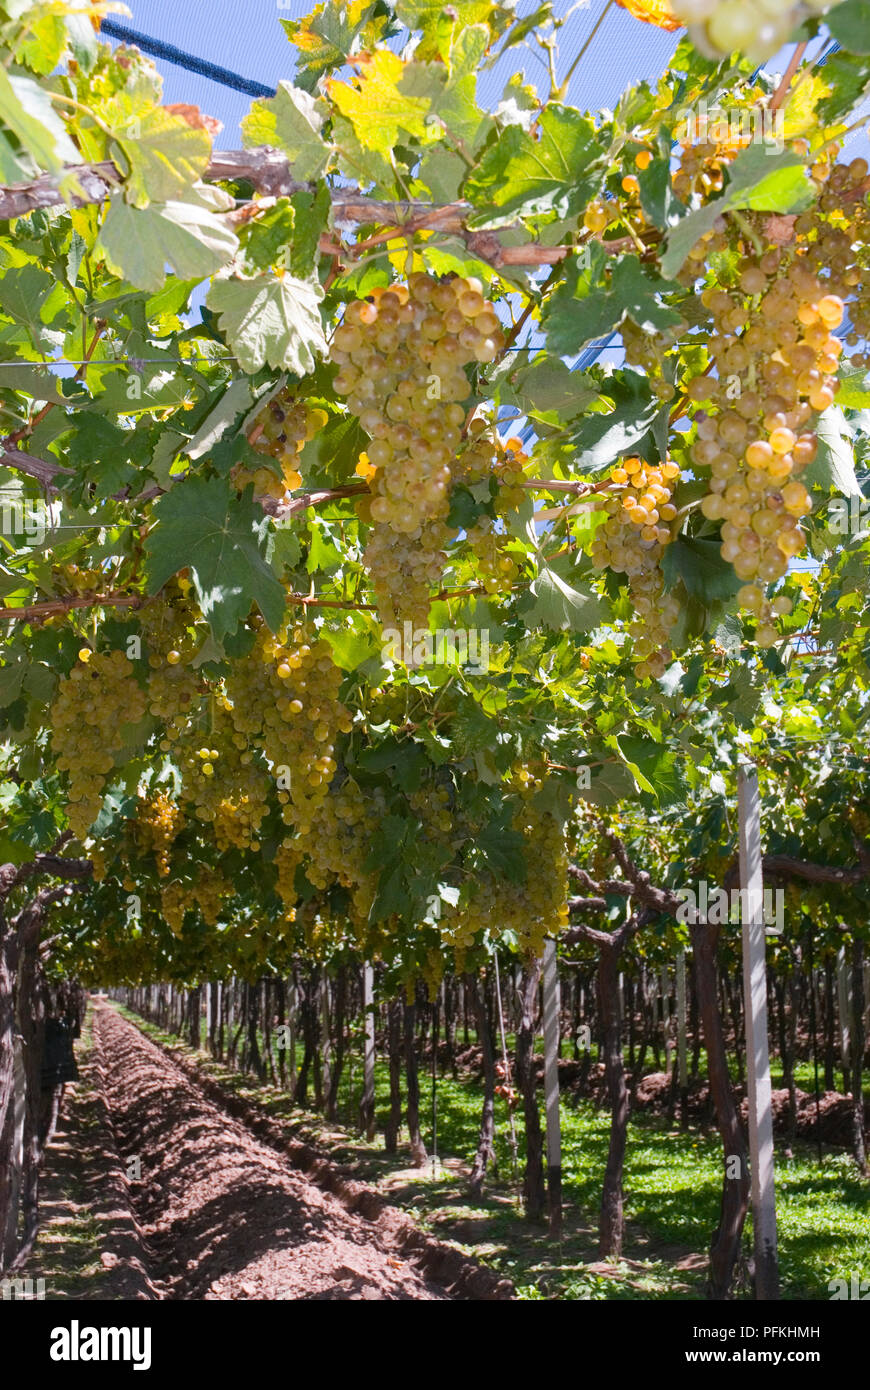 Argentina, Mendoza, Torrontes wine grapes ripe for harvesting in vineyard of Familia Zuccardi Bodega Stock Photo